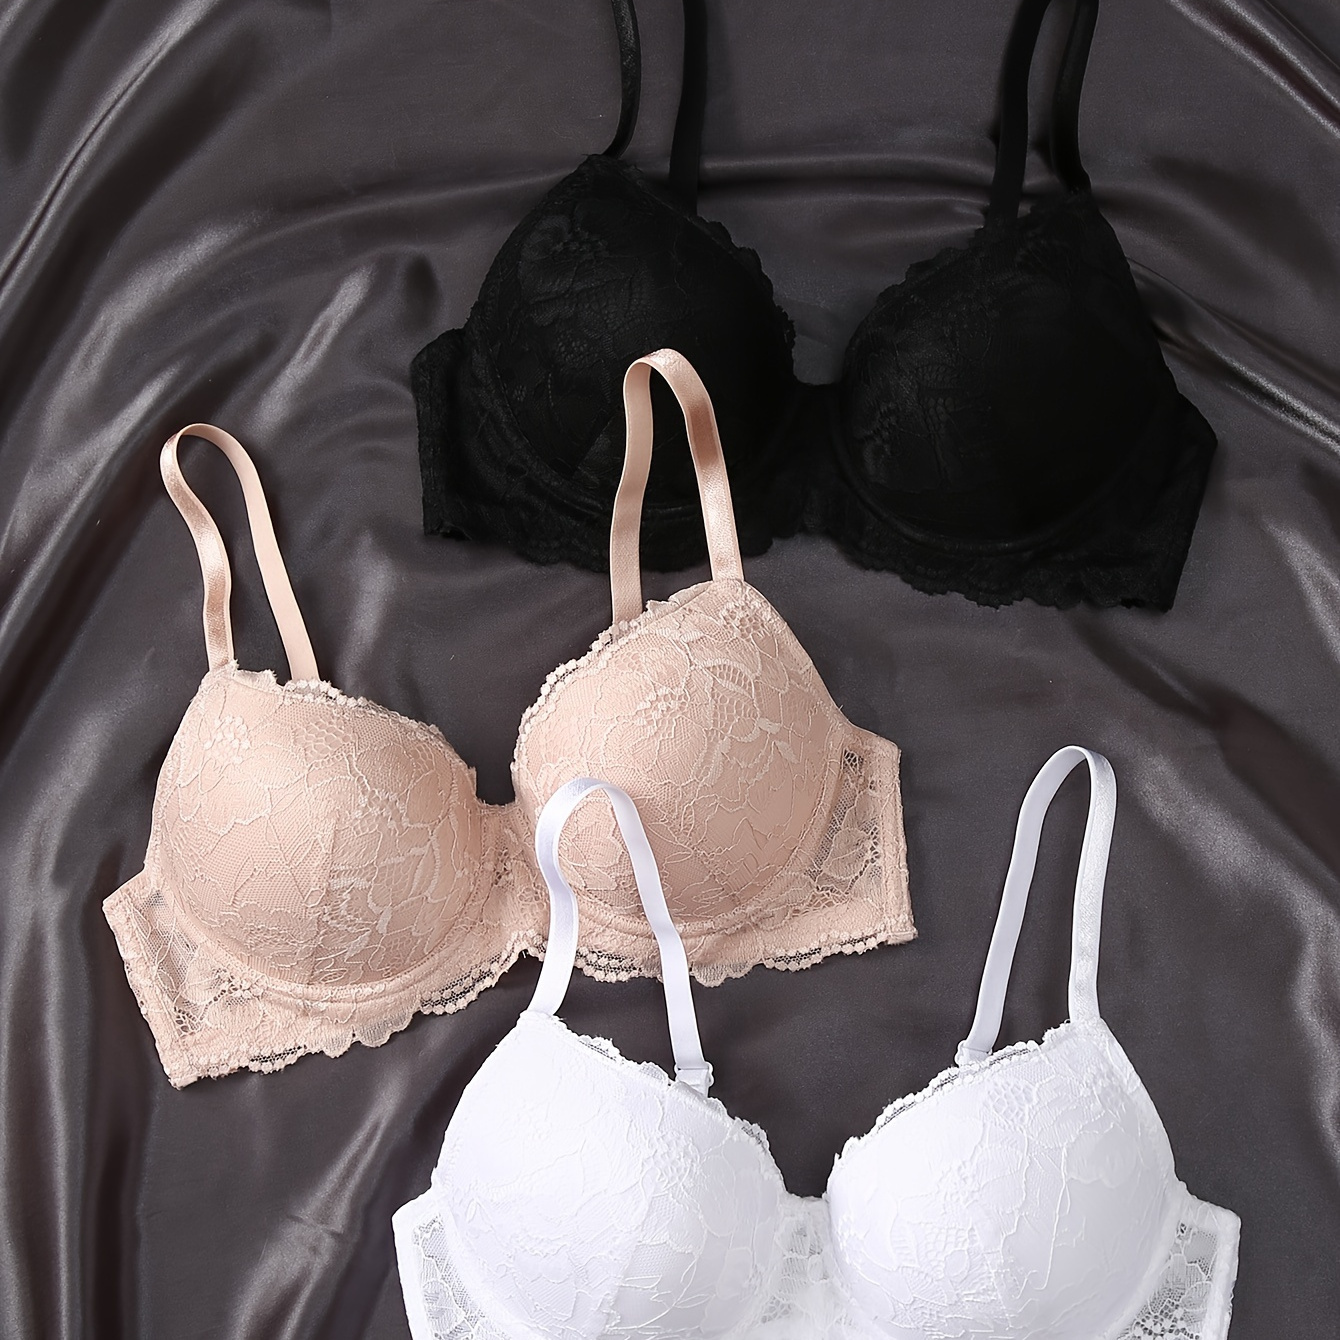 

3pcs Contrast Lace Push Up Bras, Comfy & Breathable Intimates Bra, Women's Lingerie & Underwear